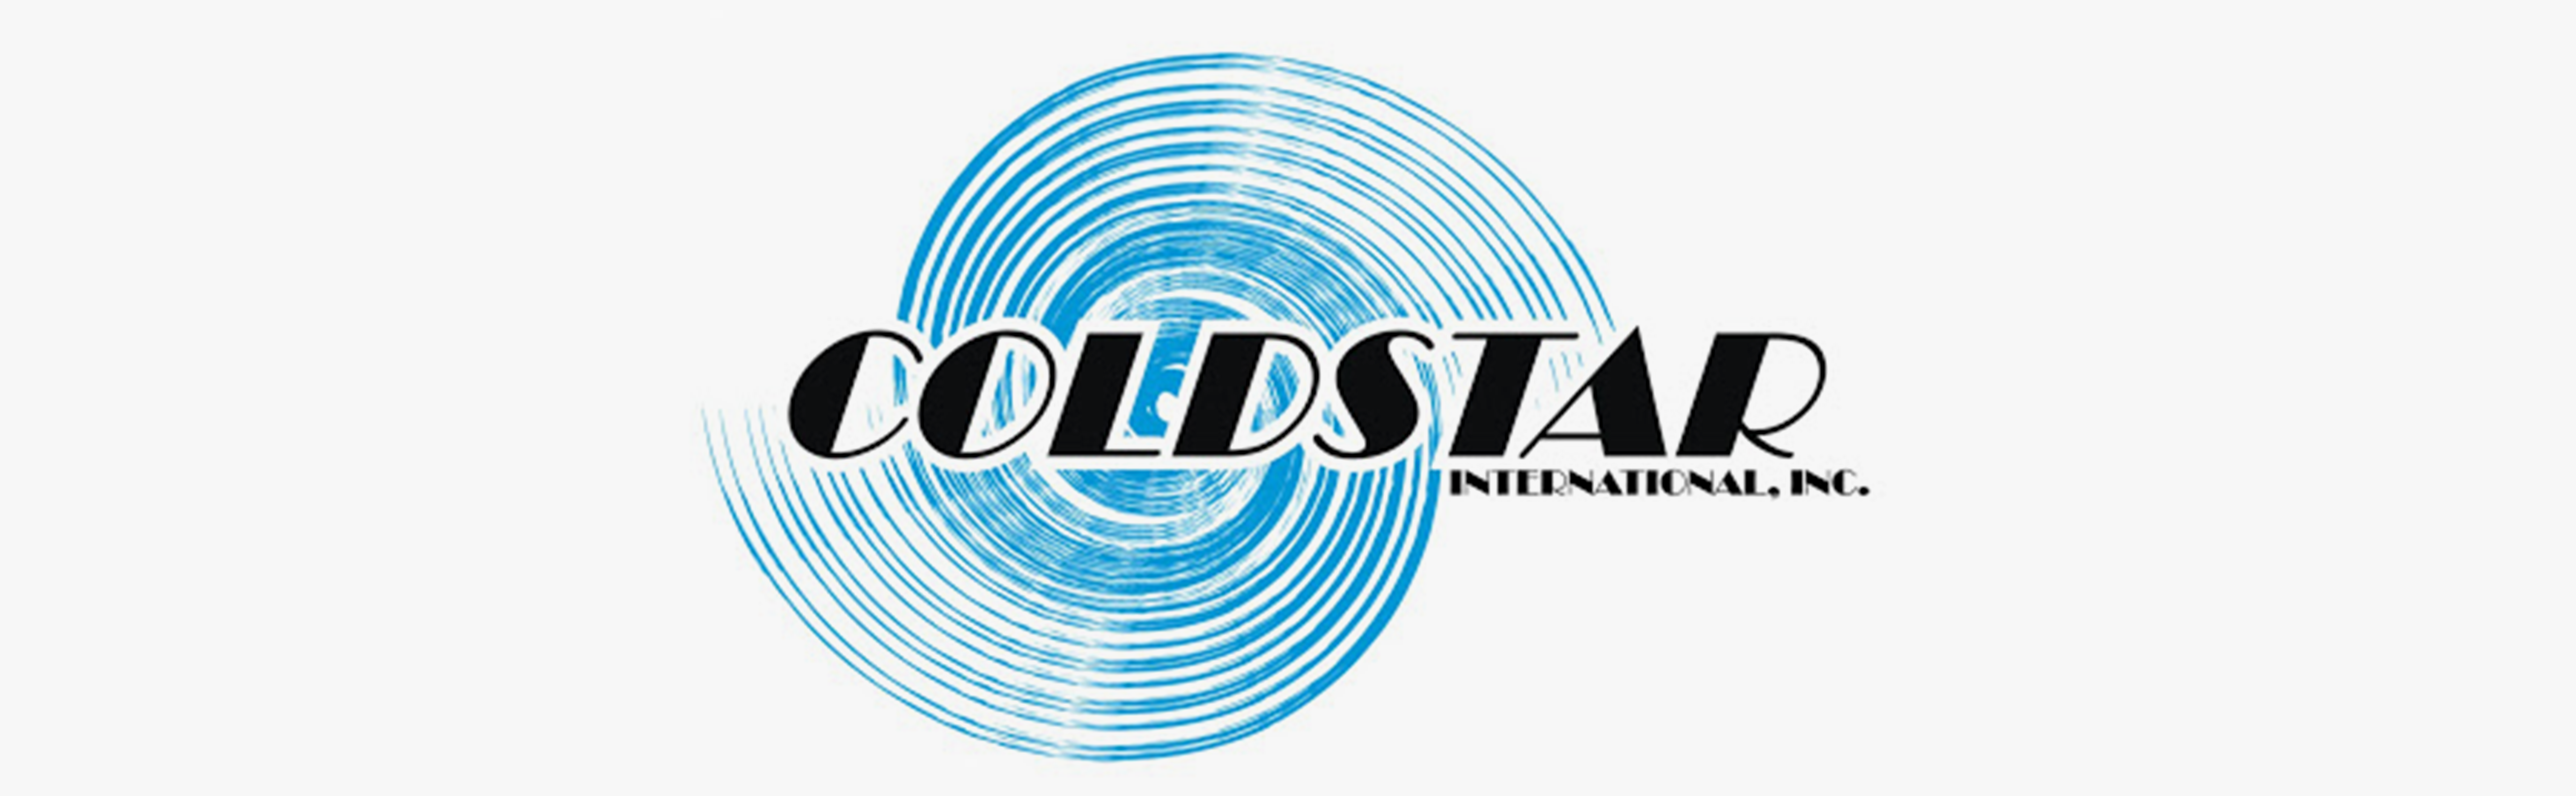 ColdStar International, Inc.